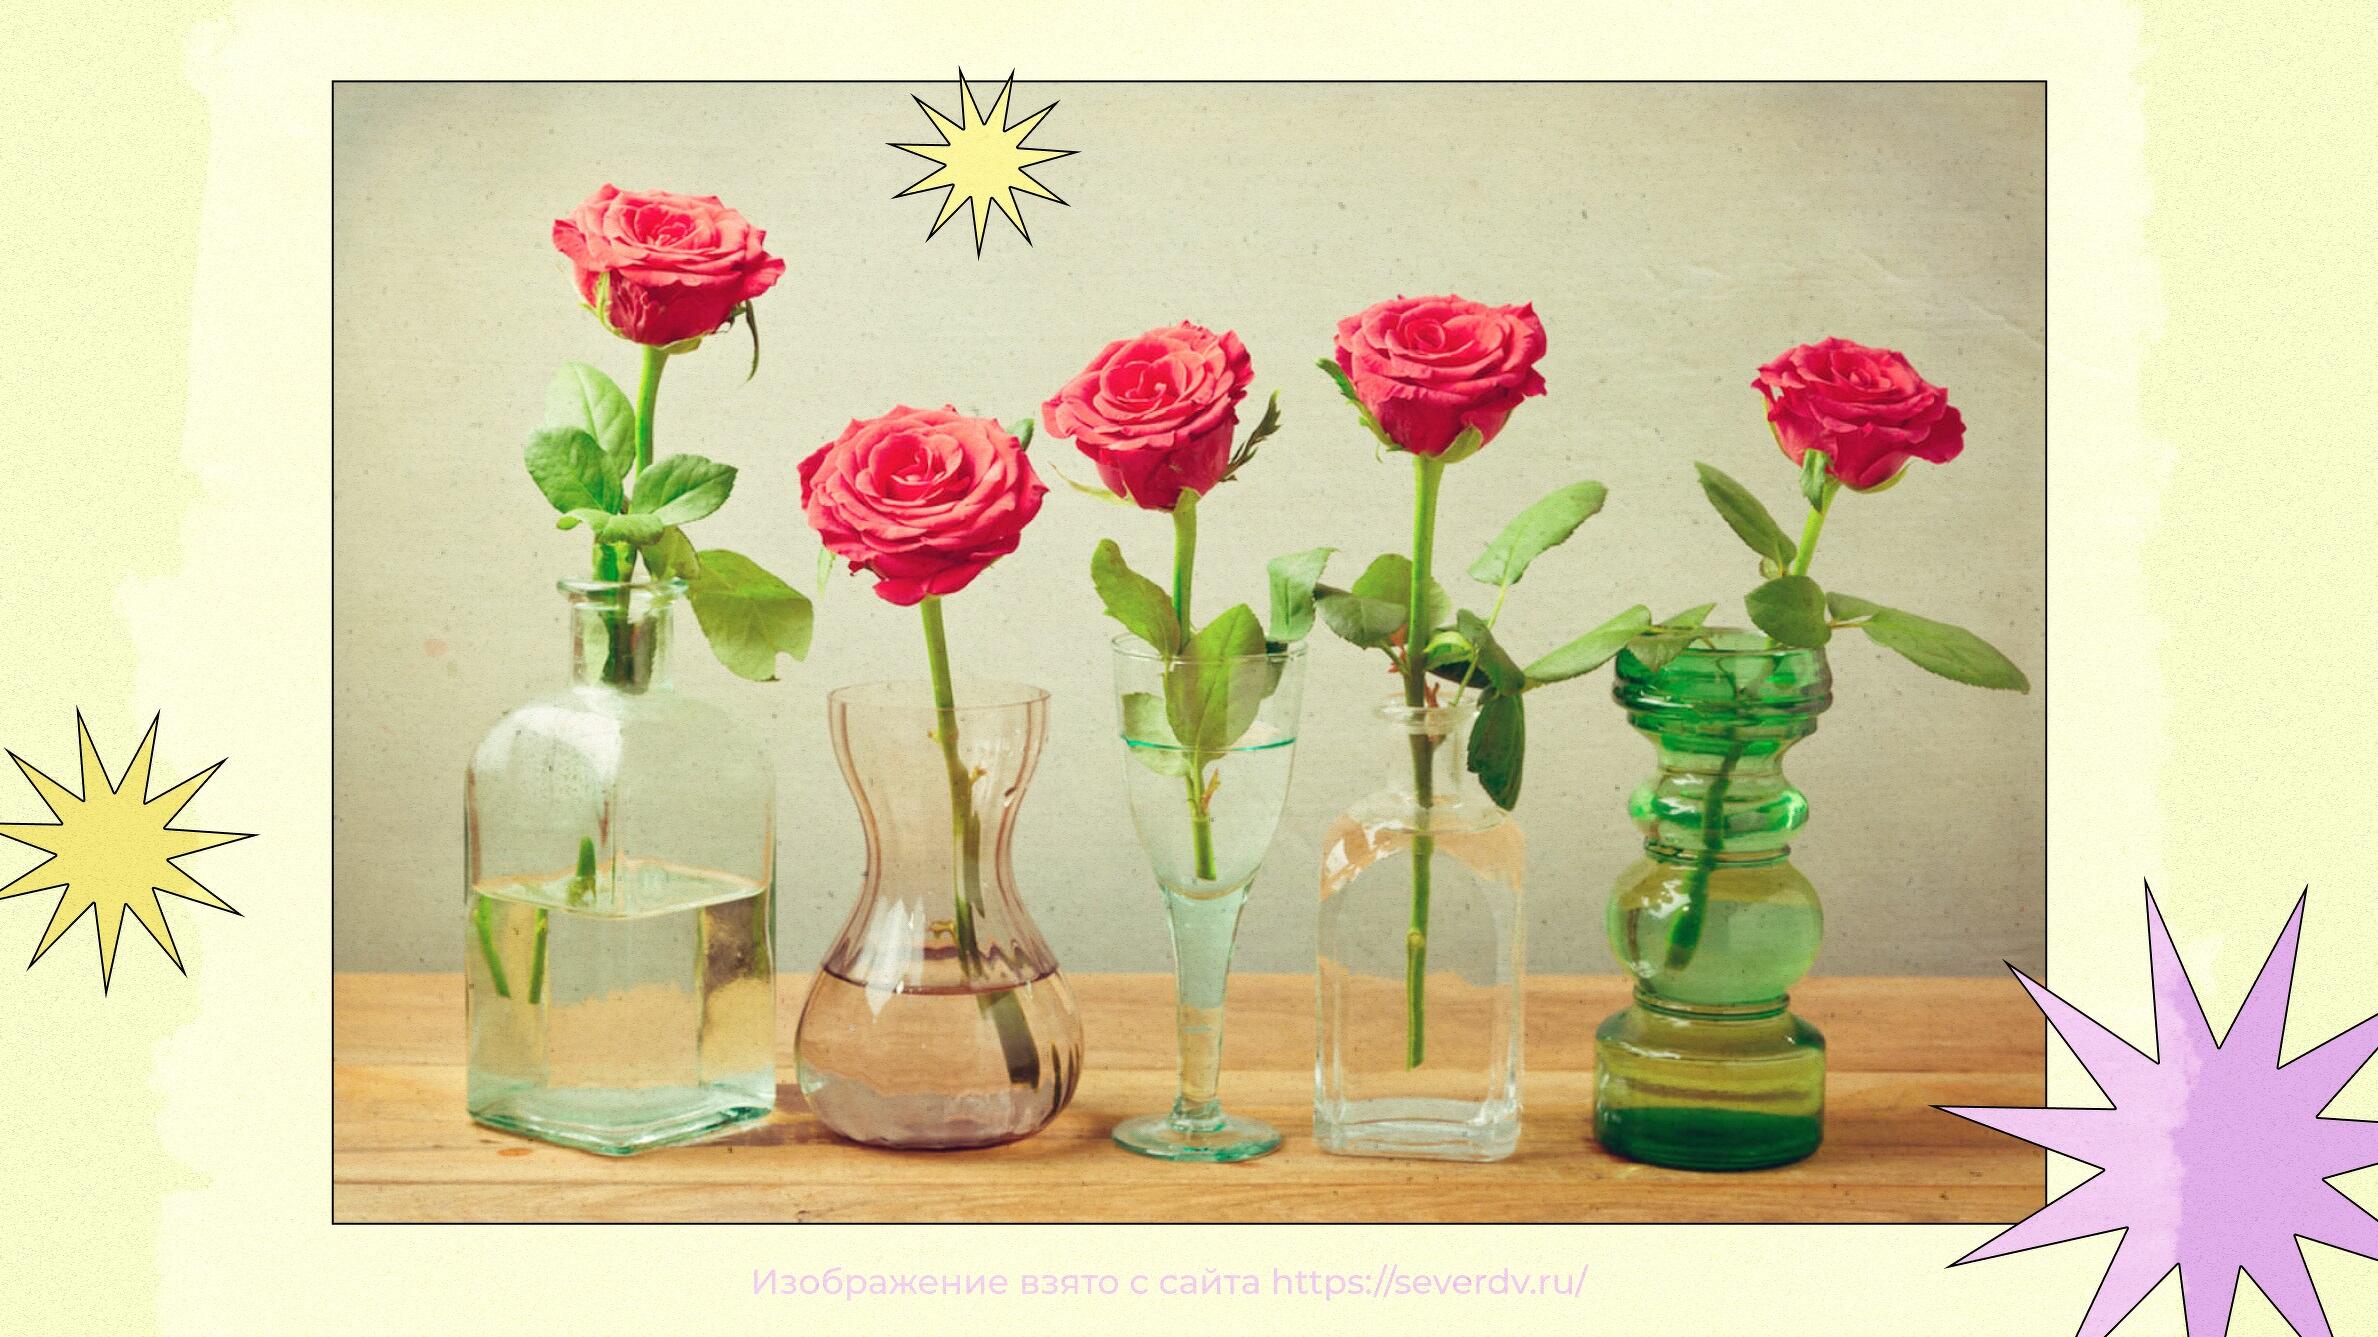 Как сохранить букет роз в домашних условиях?